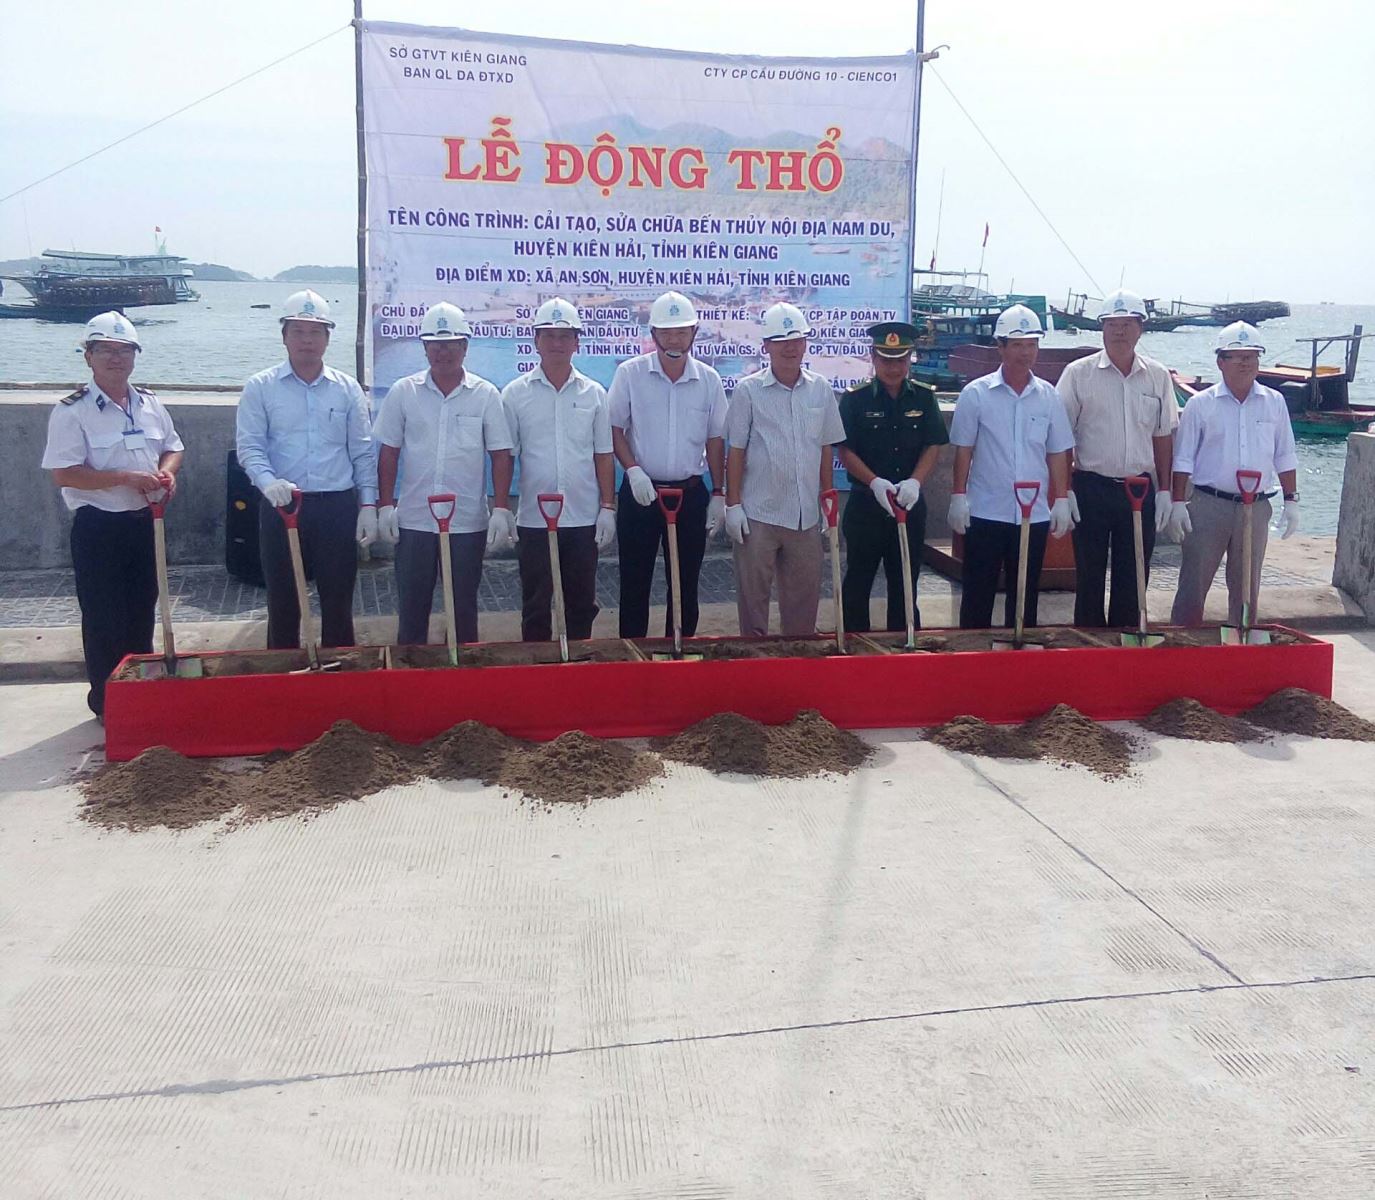 Lễ khởi công Dự án: Cải tạo, sửa chữa bến thuỷ nội địa Nam Du, huyện Kiên Hải, tỉnh Kiên Giang